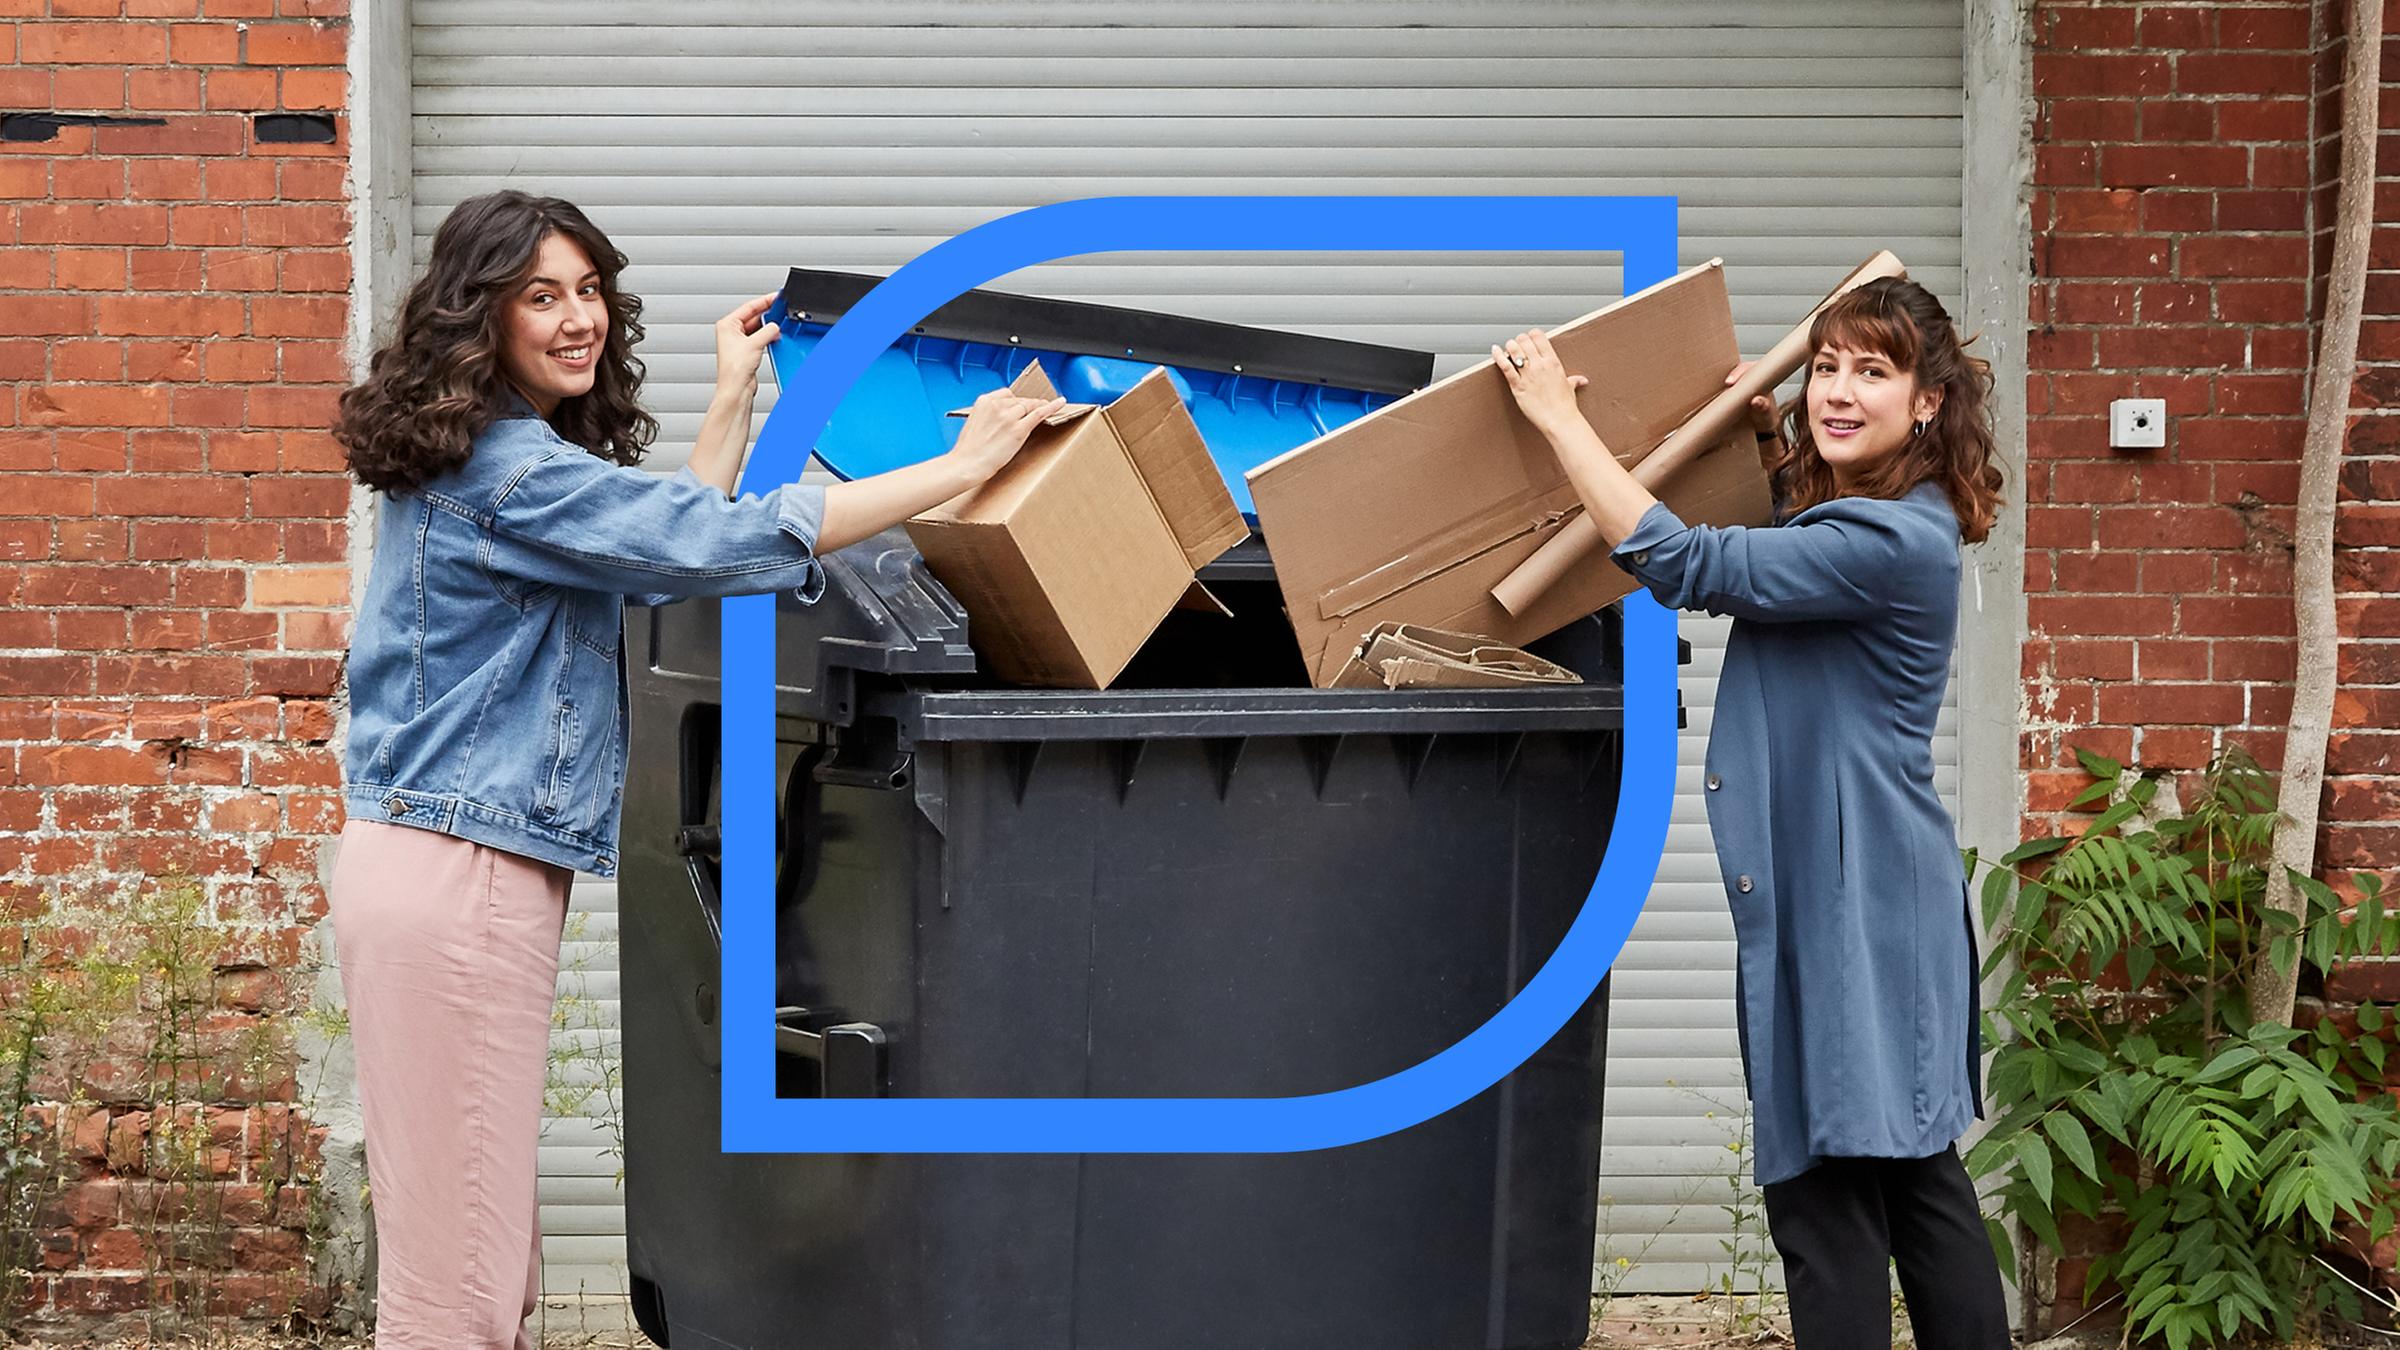  Refiye Ellek (l.) und Antonia Lilly Schanze (r.) entsorgen Altpapier in einem Container.